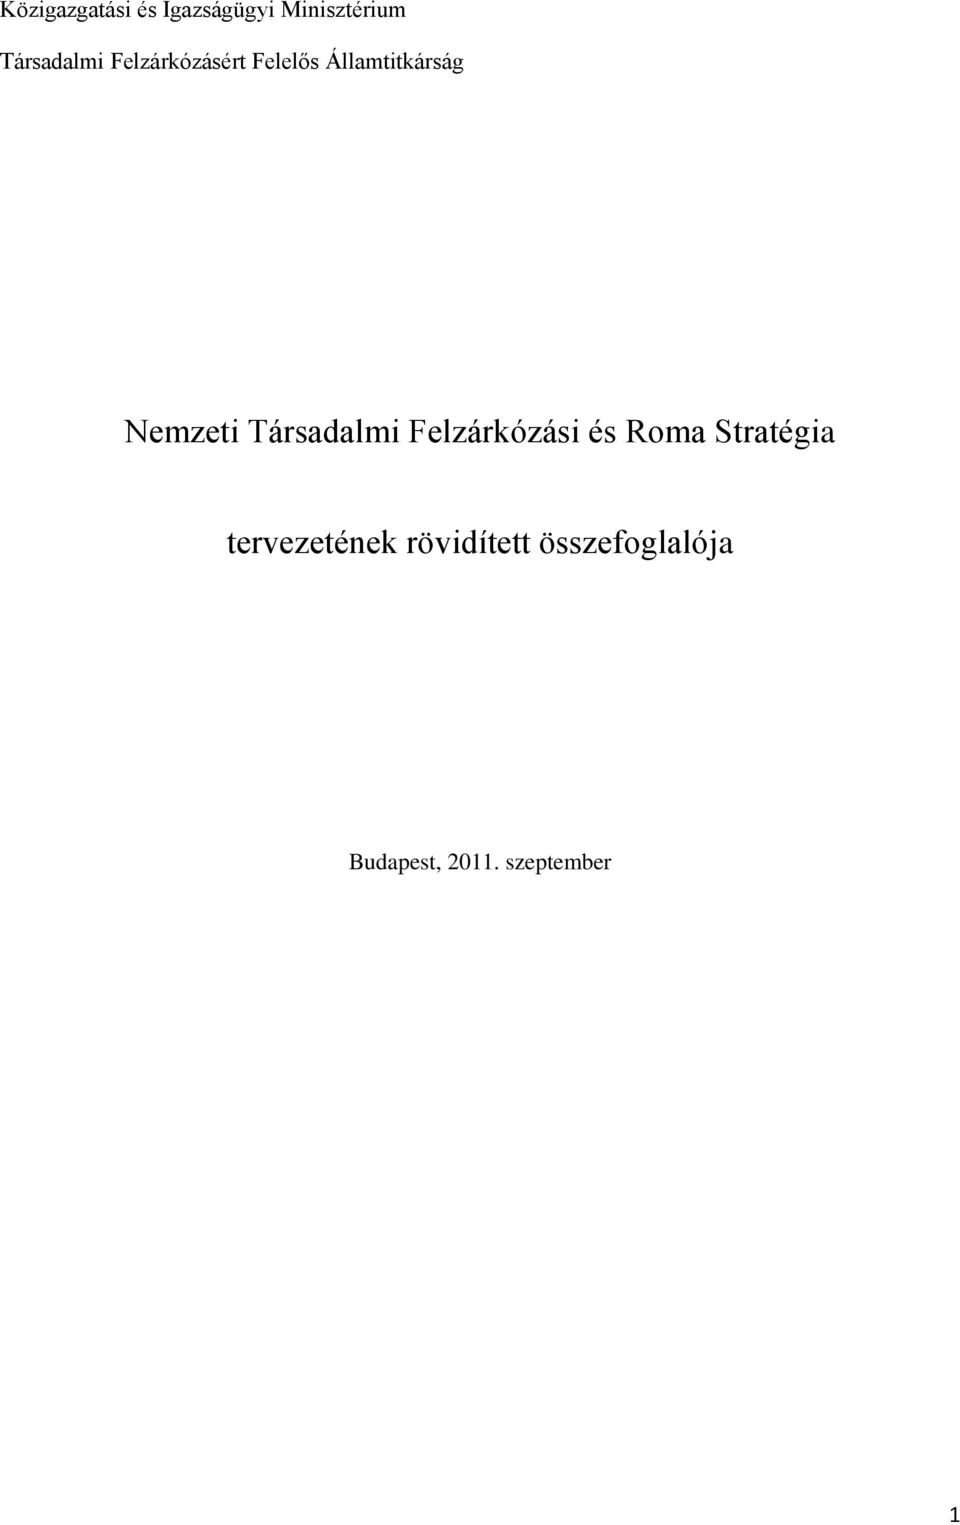 Nemzeti Társadalmi Felzárkózási és Roma Stratégia